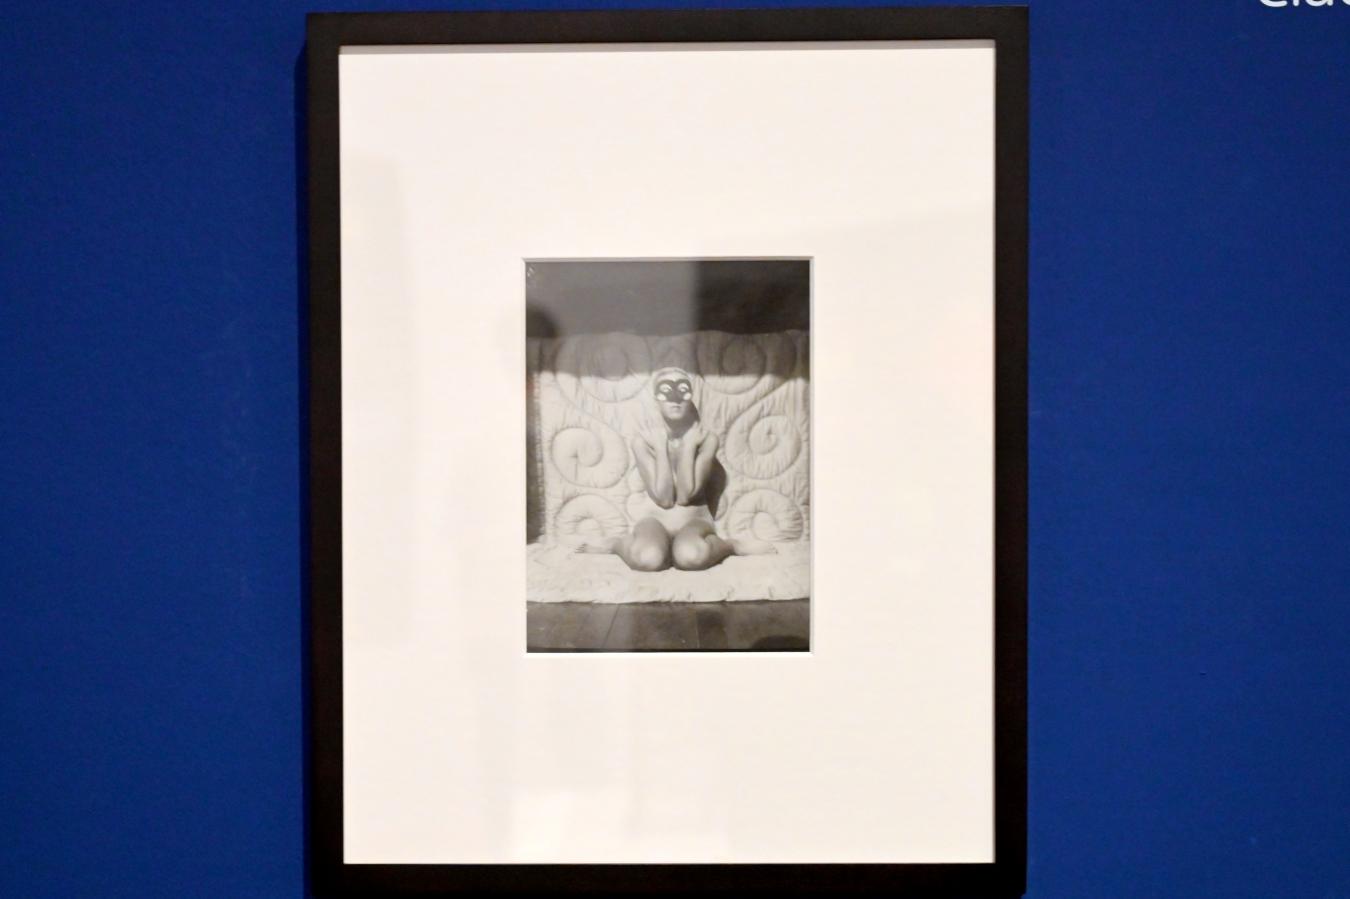 Claude Cahun (Lucy Renée Schwob) (1925–1928), Selbstporträt (Kniend, nackt, mit Maske), London, Tate Modern, Ausstellung "Surrealism Beyond Borders" vom 24.02.-29.08.2022, Saal 9, 1928